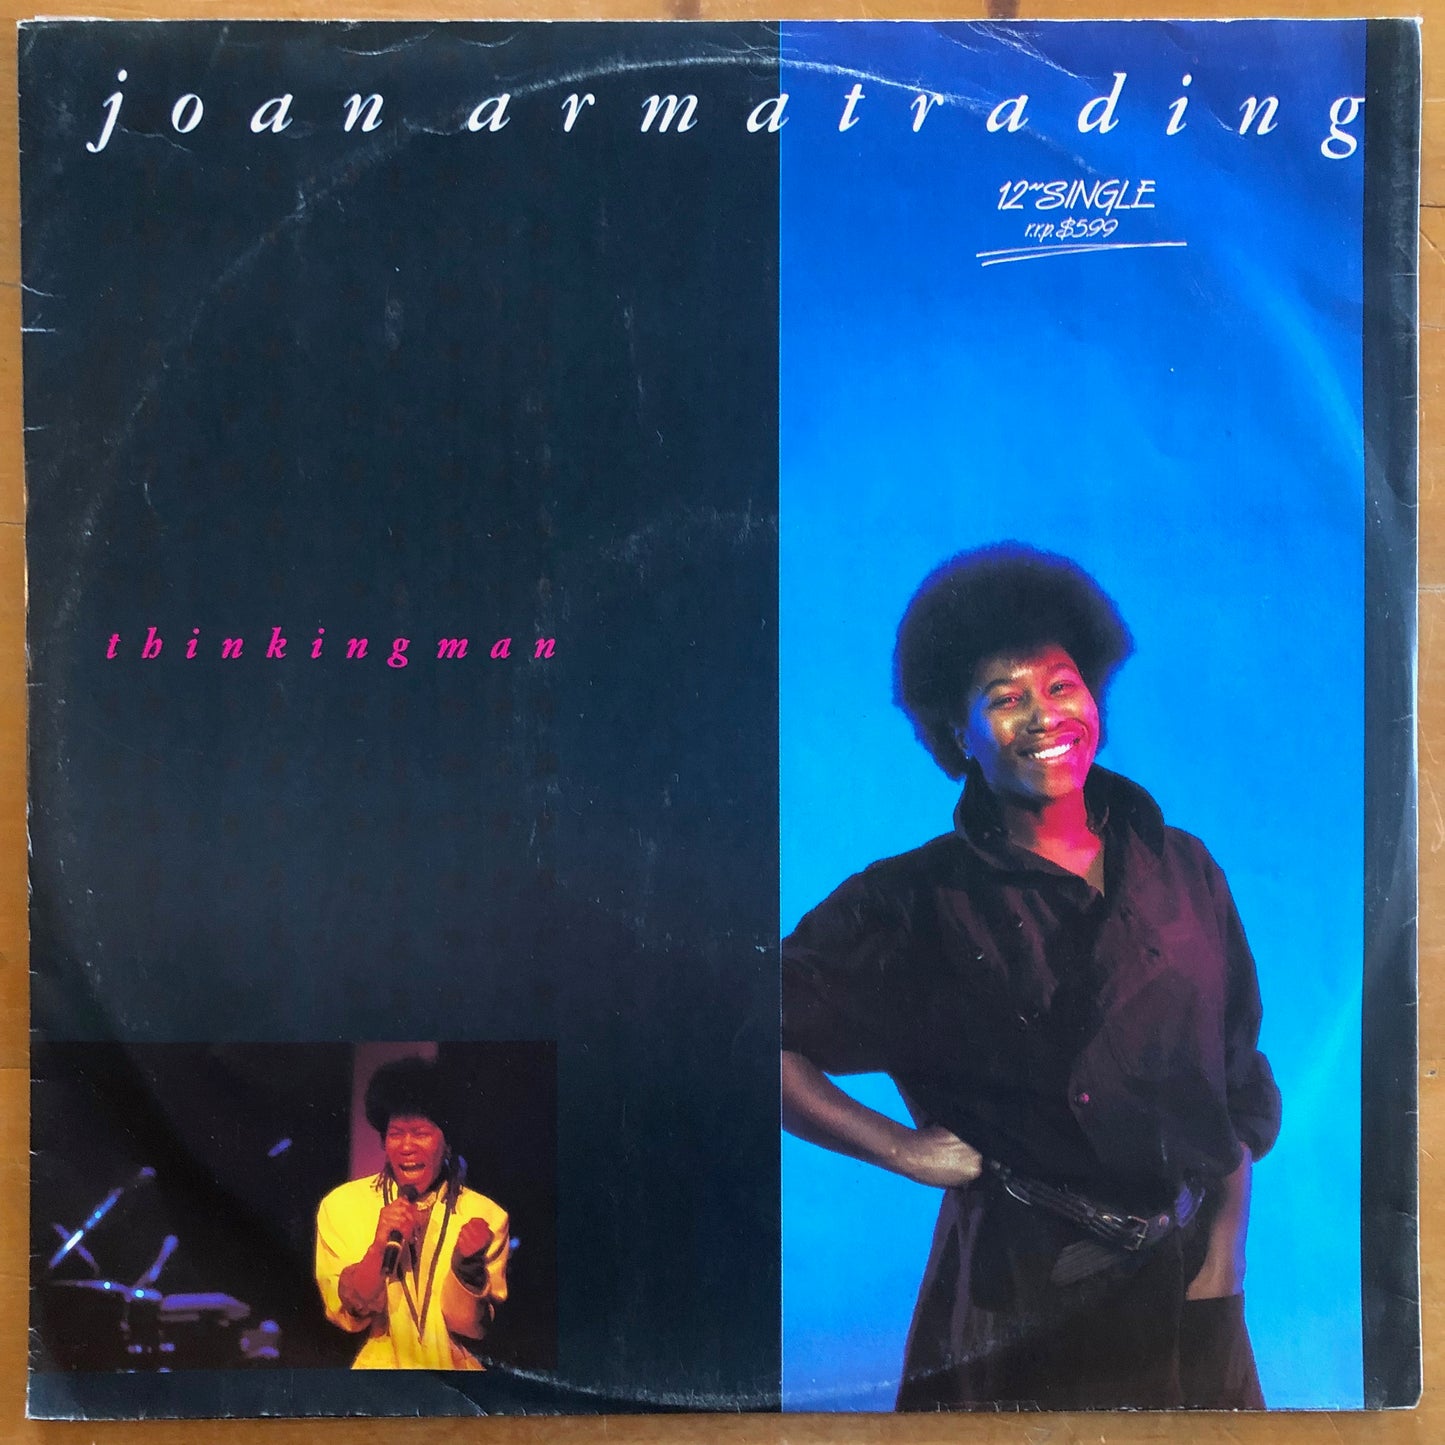 Joan Armatrading - Thinking Man (12"single)